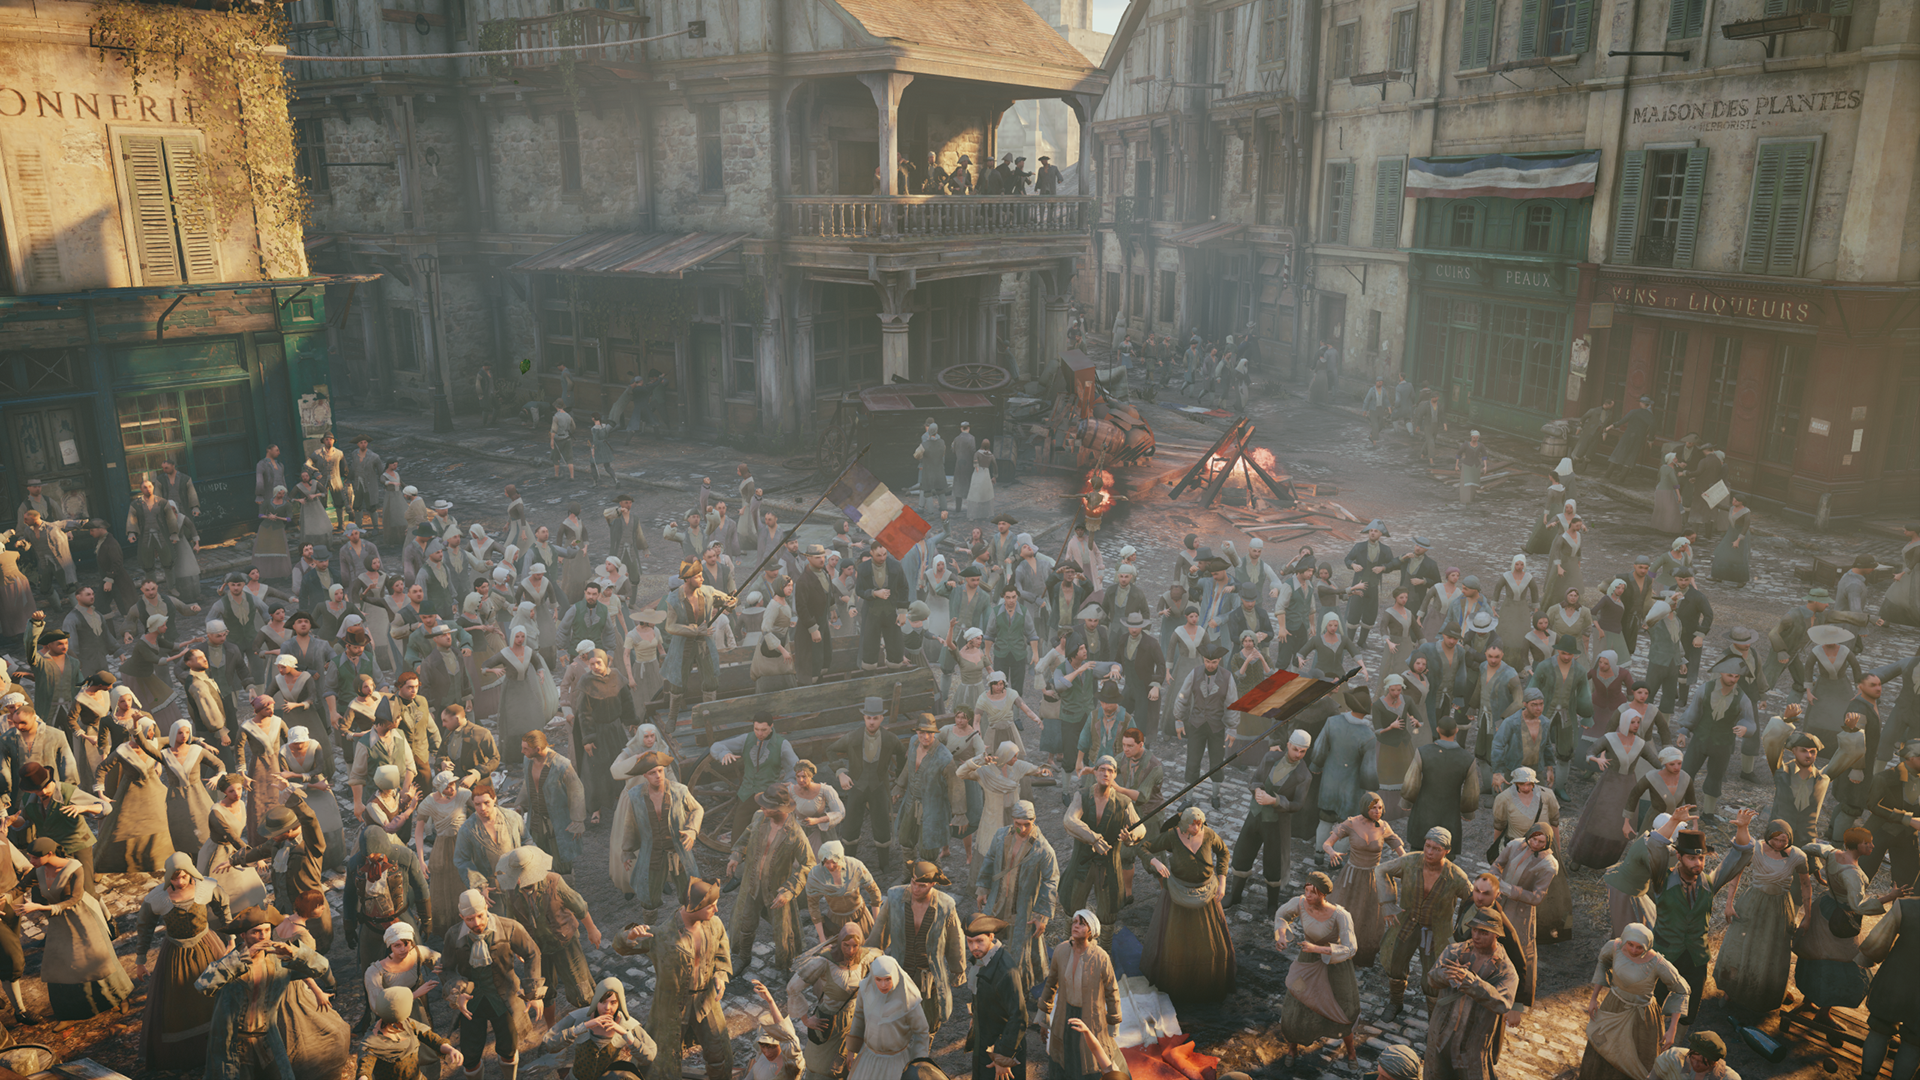 18 00 на площади. Assassin's Creed Unity революция. Французская революция Юнити. Французская революция ассасин Крид Юнити. Великая французская революция Assassin's Creed.